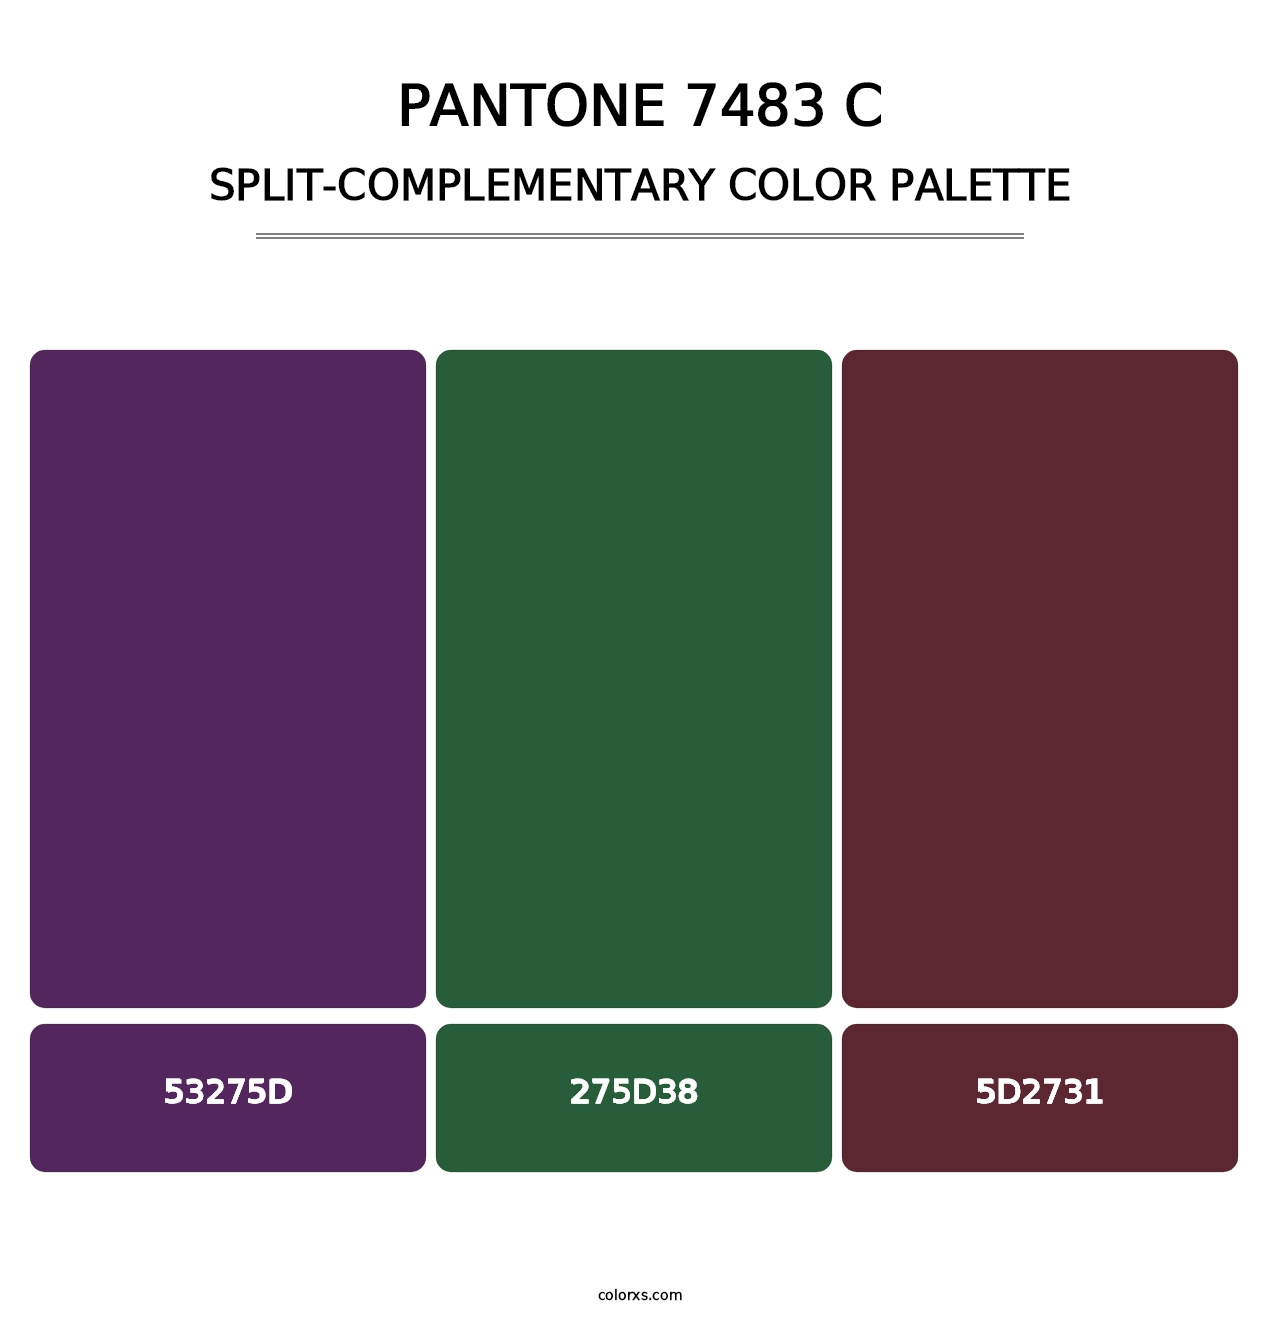 PANTONE 7483 C - Split-Complementary Color Palette